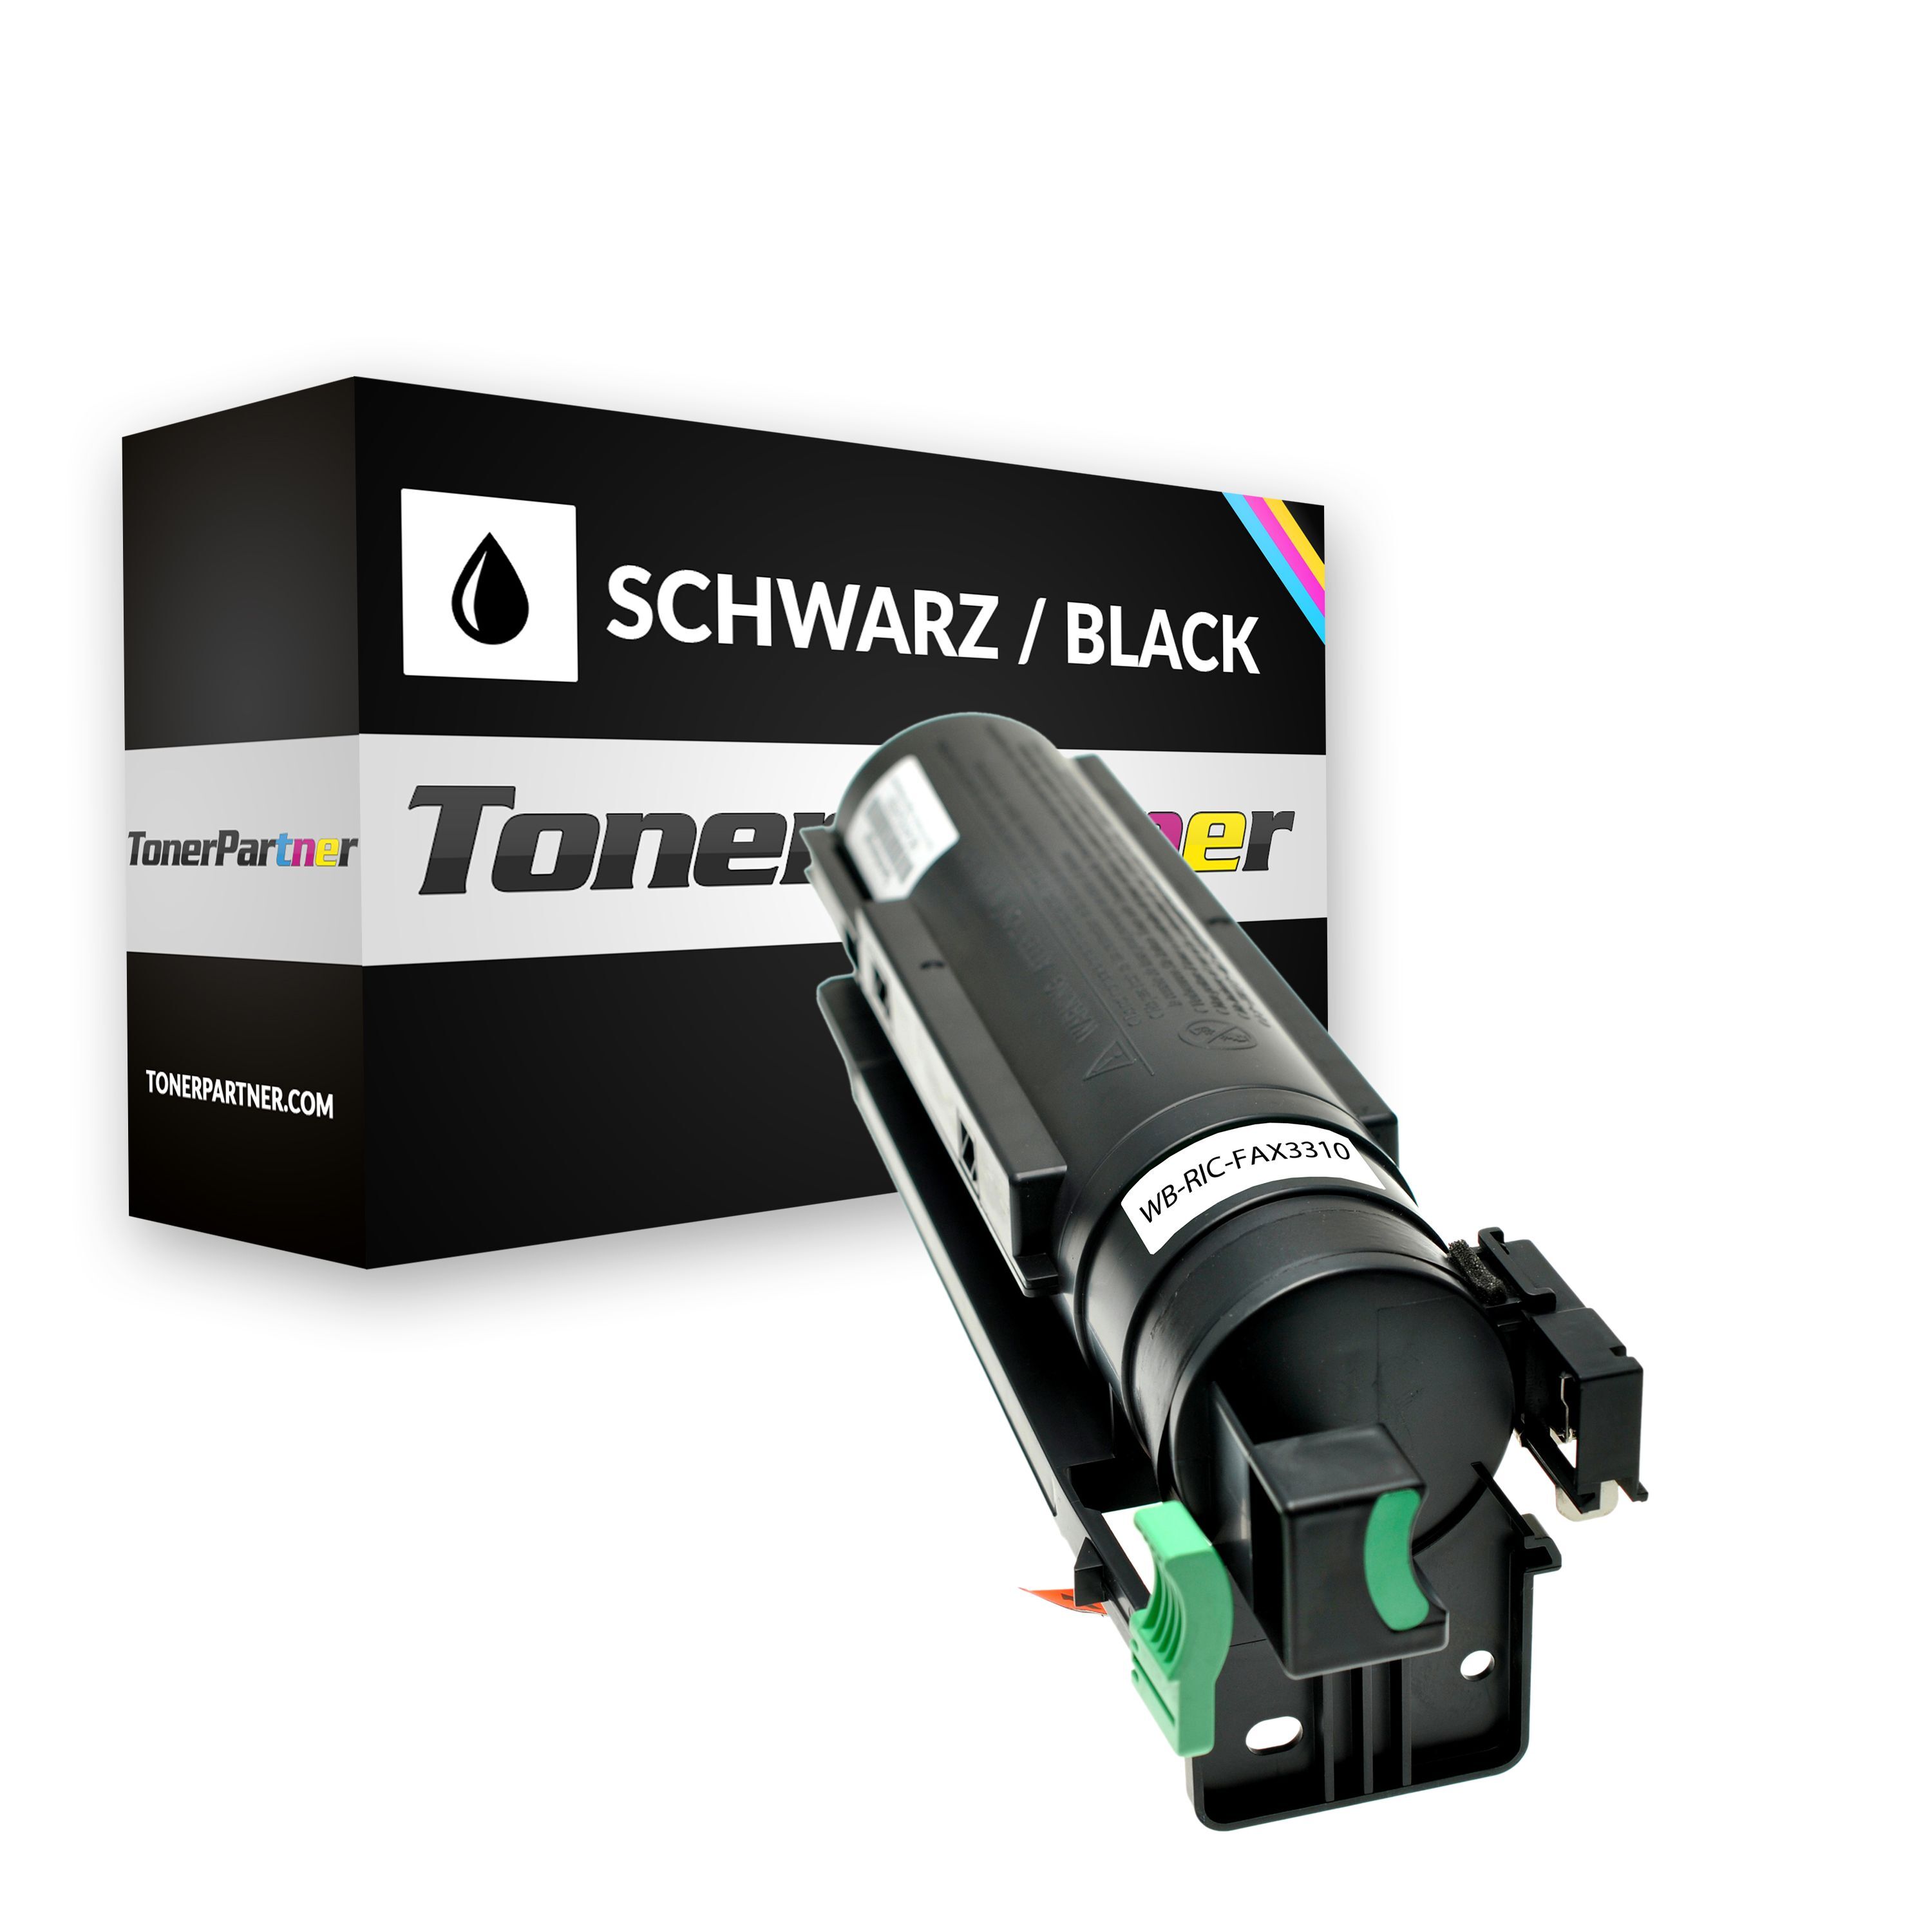 TonerPartner Kompatibel zu Ricoh Fax 4410 nf Toner (TYPE 1260 D / 430351) schwarz, 5.000 Seiten, 1,14 Rp pro Seite, Inhalt: 415 g von TonerPartner